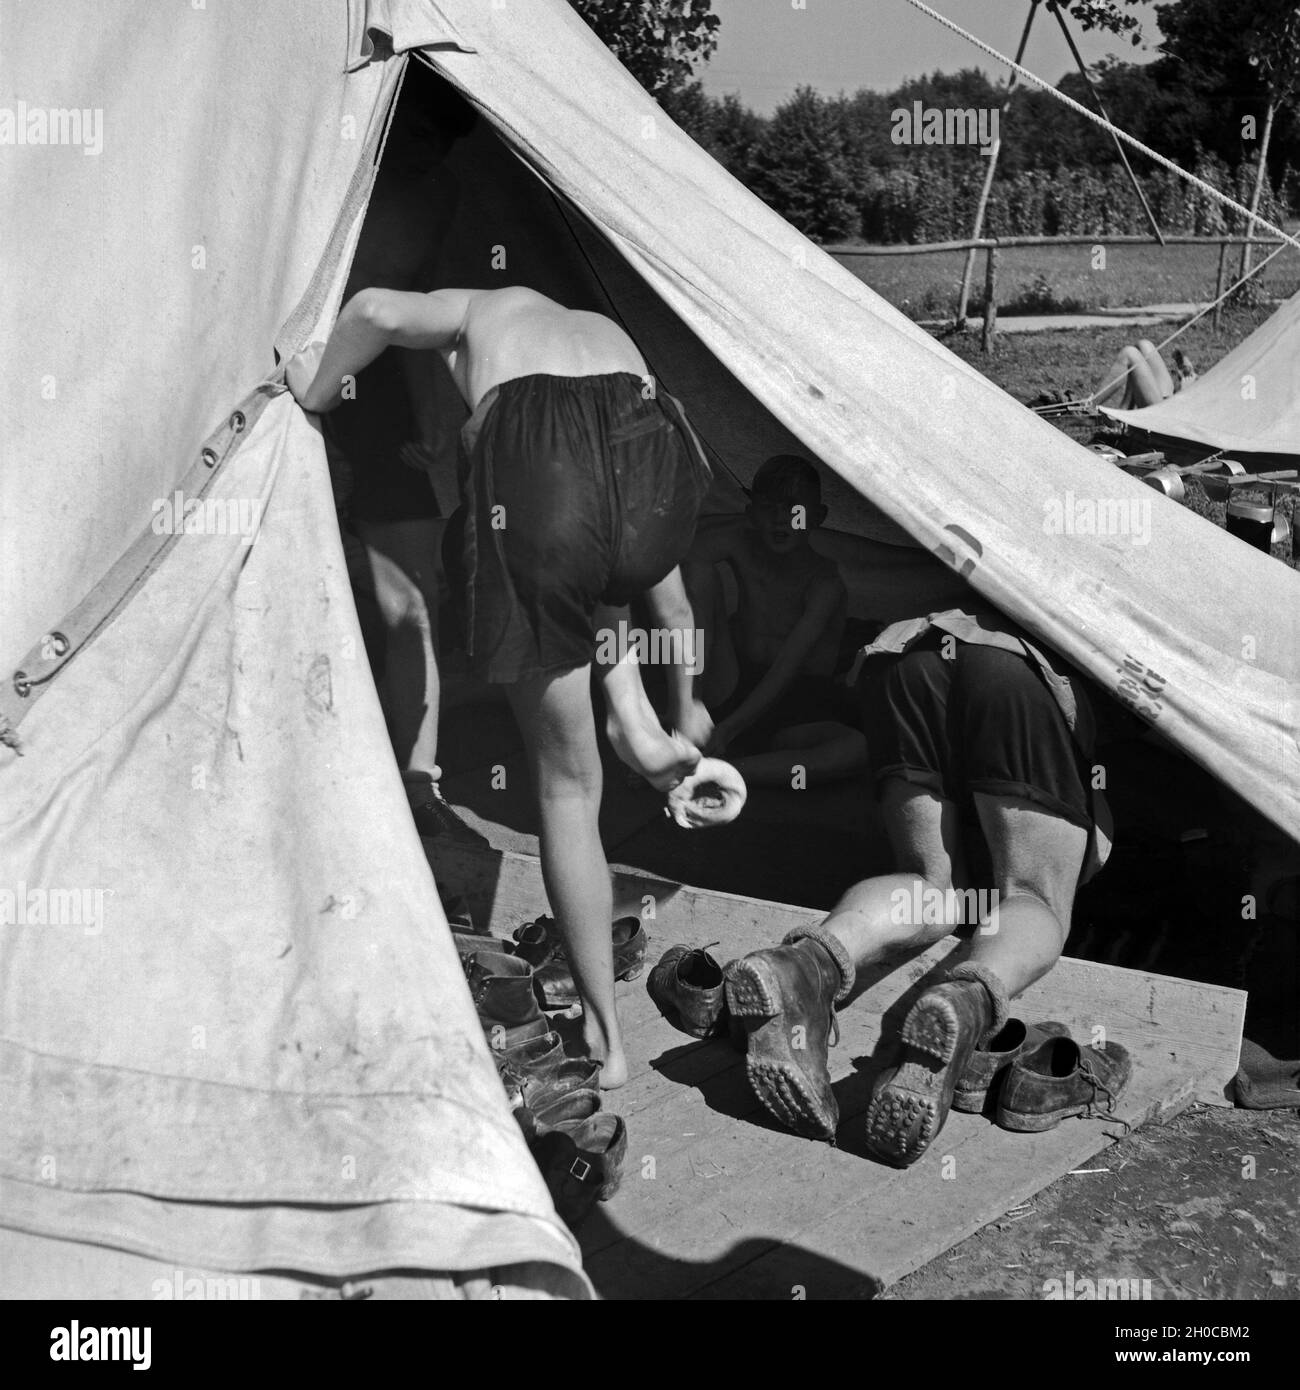 Im Lager der Hitlerjugend-Kompanie aus Franken im Zelt, wo die Schuhe gelagert werden, Österreich 1930er Jahre. At the Hitler youth camp: tent where shoes are stored, Austria 1930s. Stock Photo